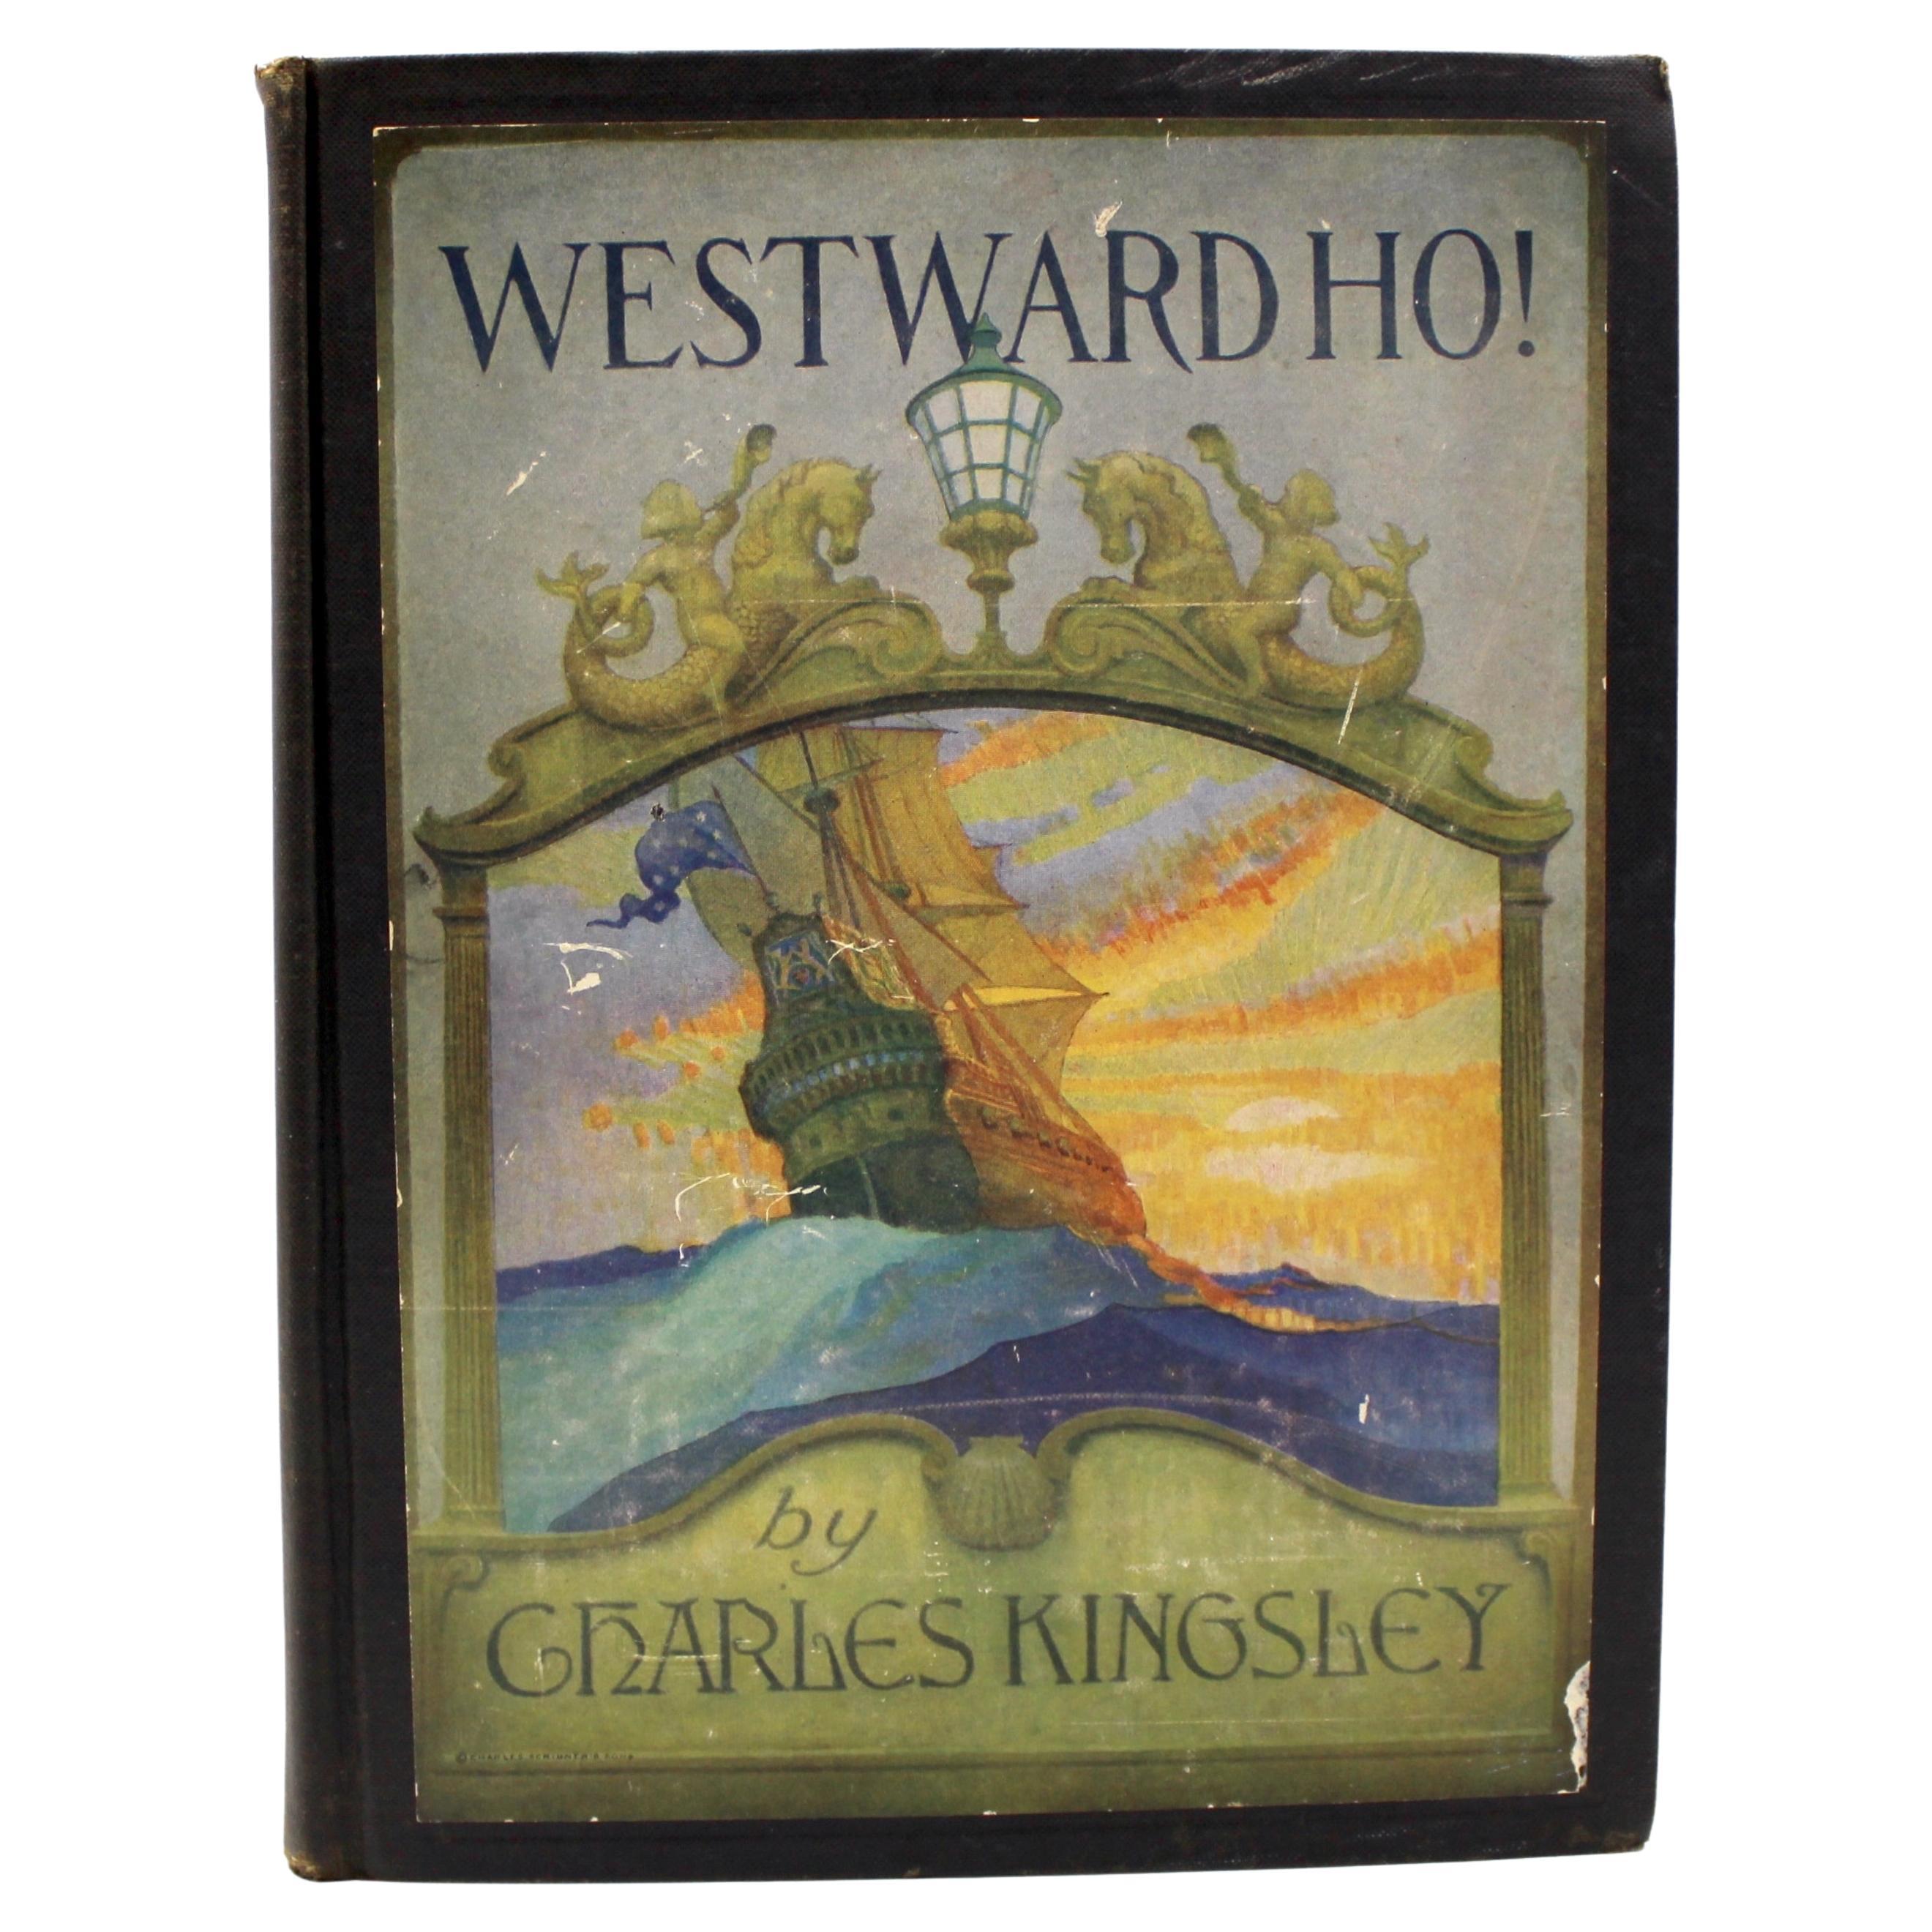 Westward Ho! by Charles Kingsley, Illustrated by N. C. Wyeth, 1924